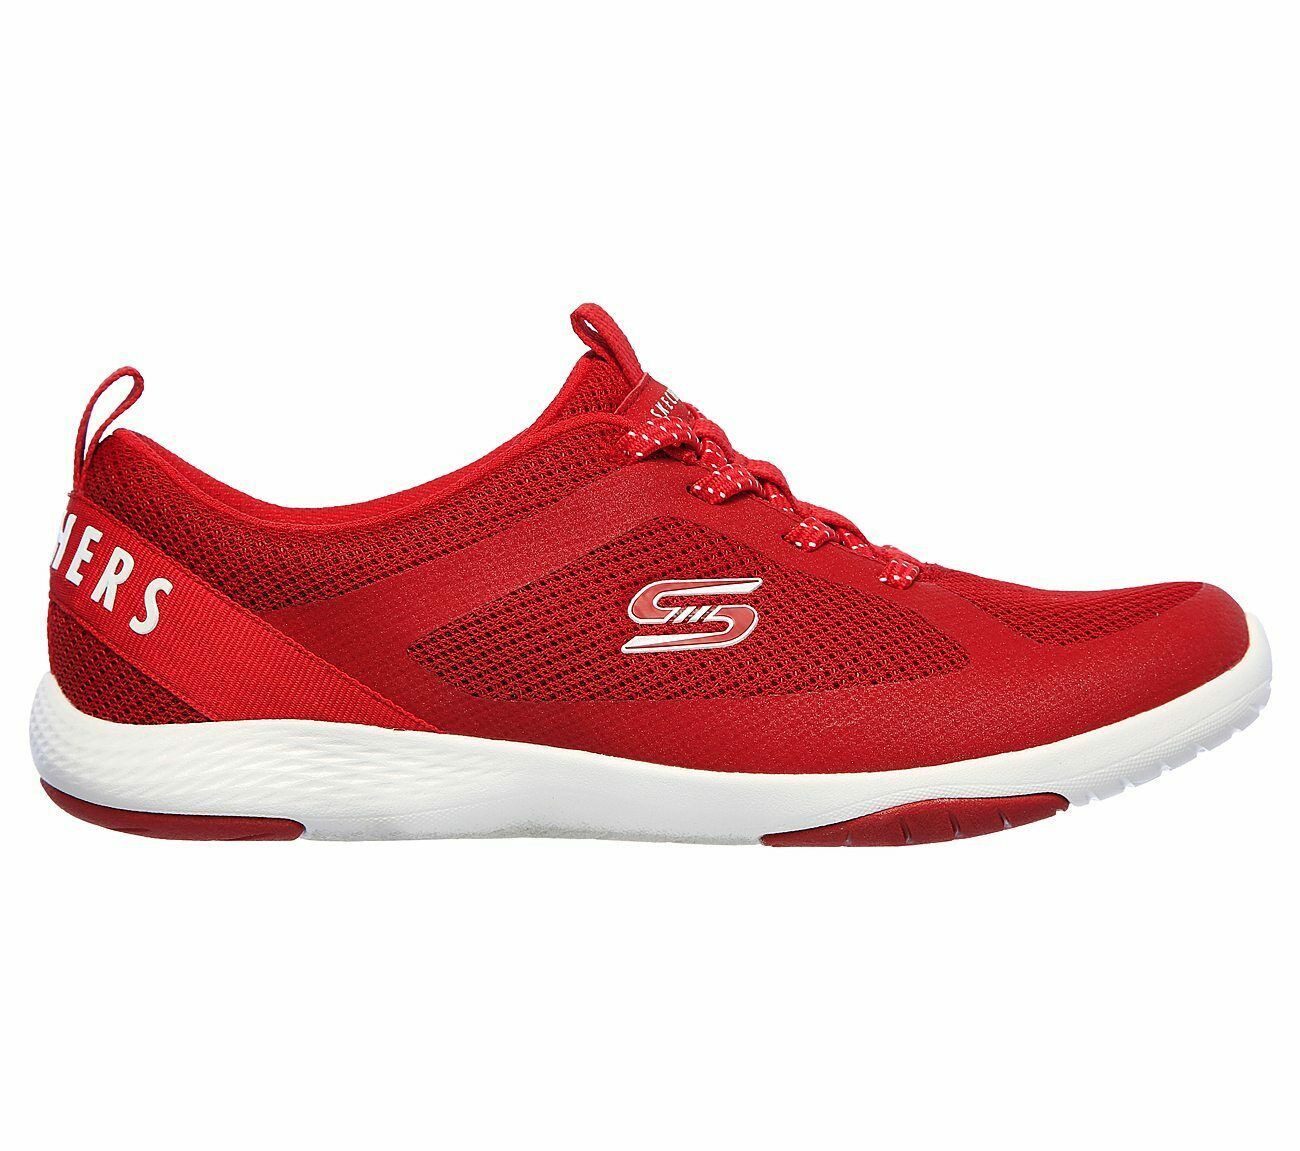 Skechers Red Shoes Memory Foam Women Slip On Comfort Casual Sport ...